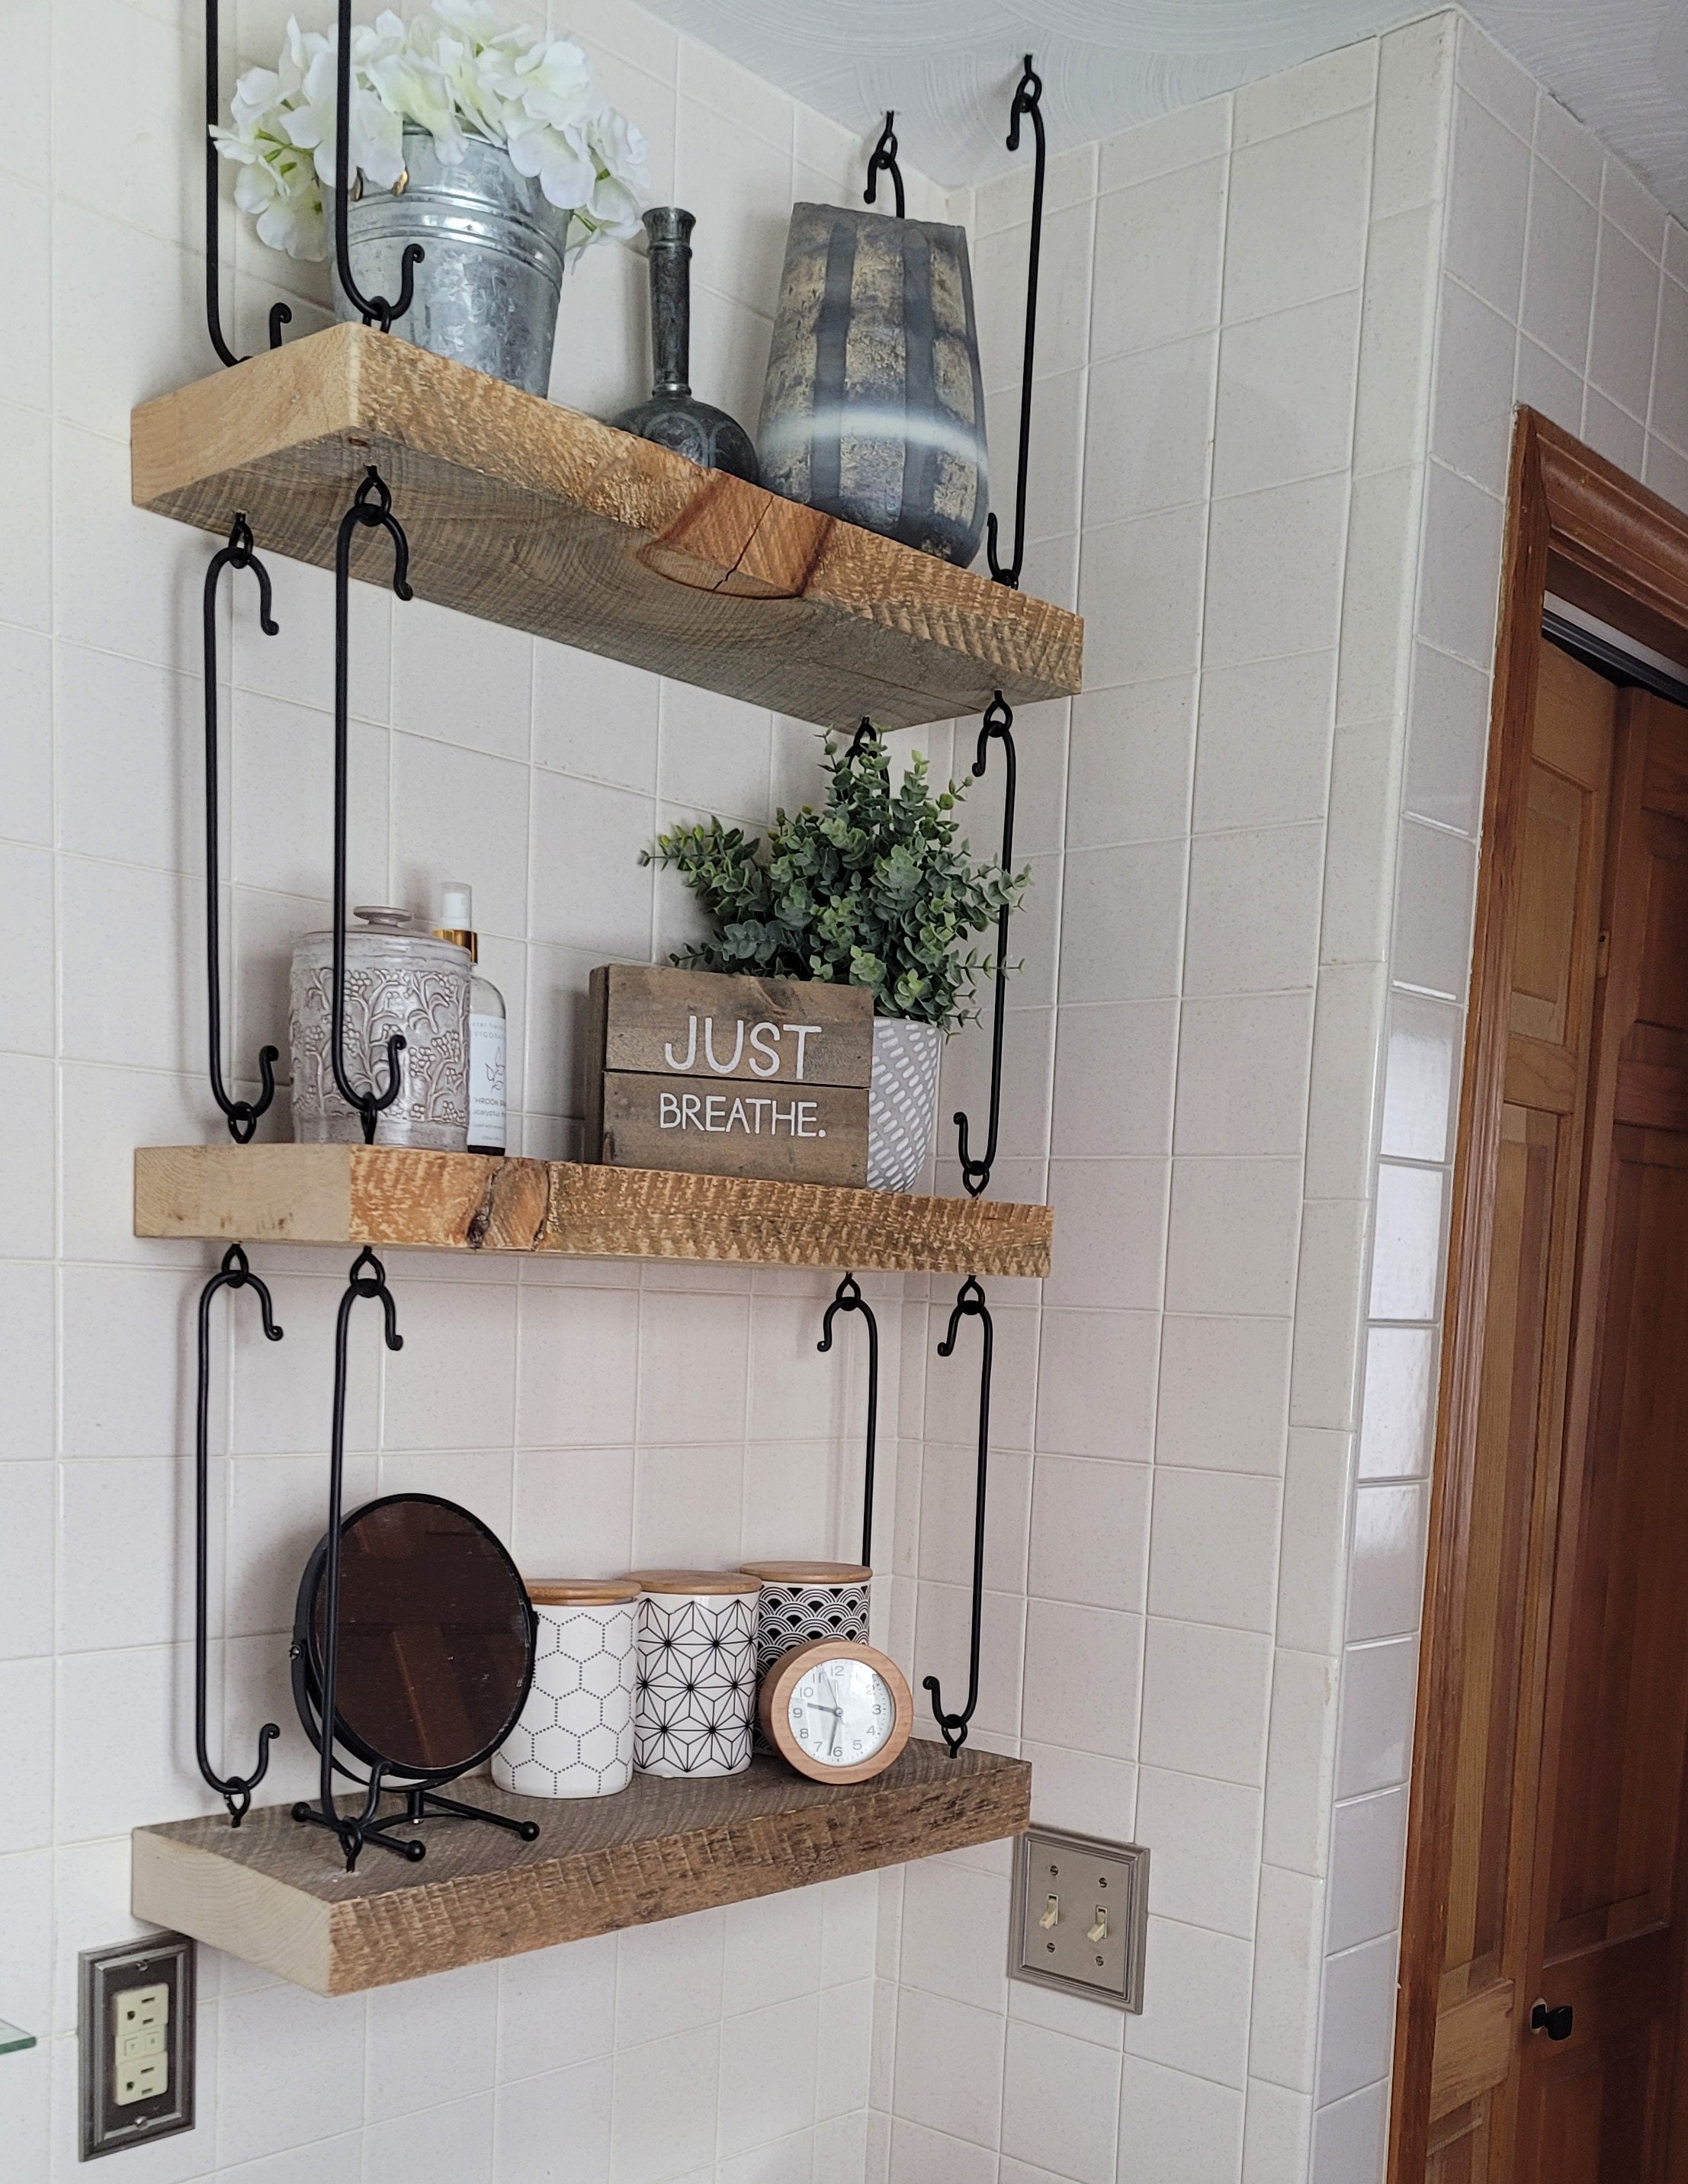 Churchgate Wall Mounted Kitchen Shelf with Hooks